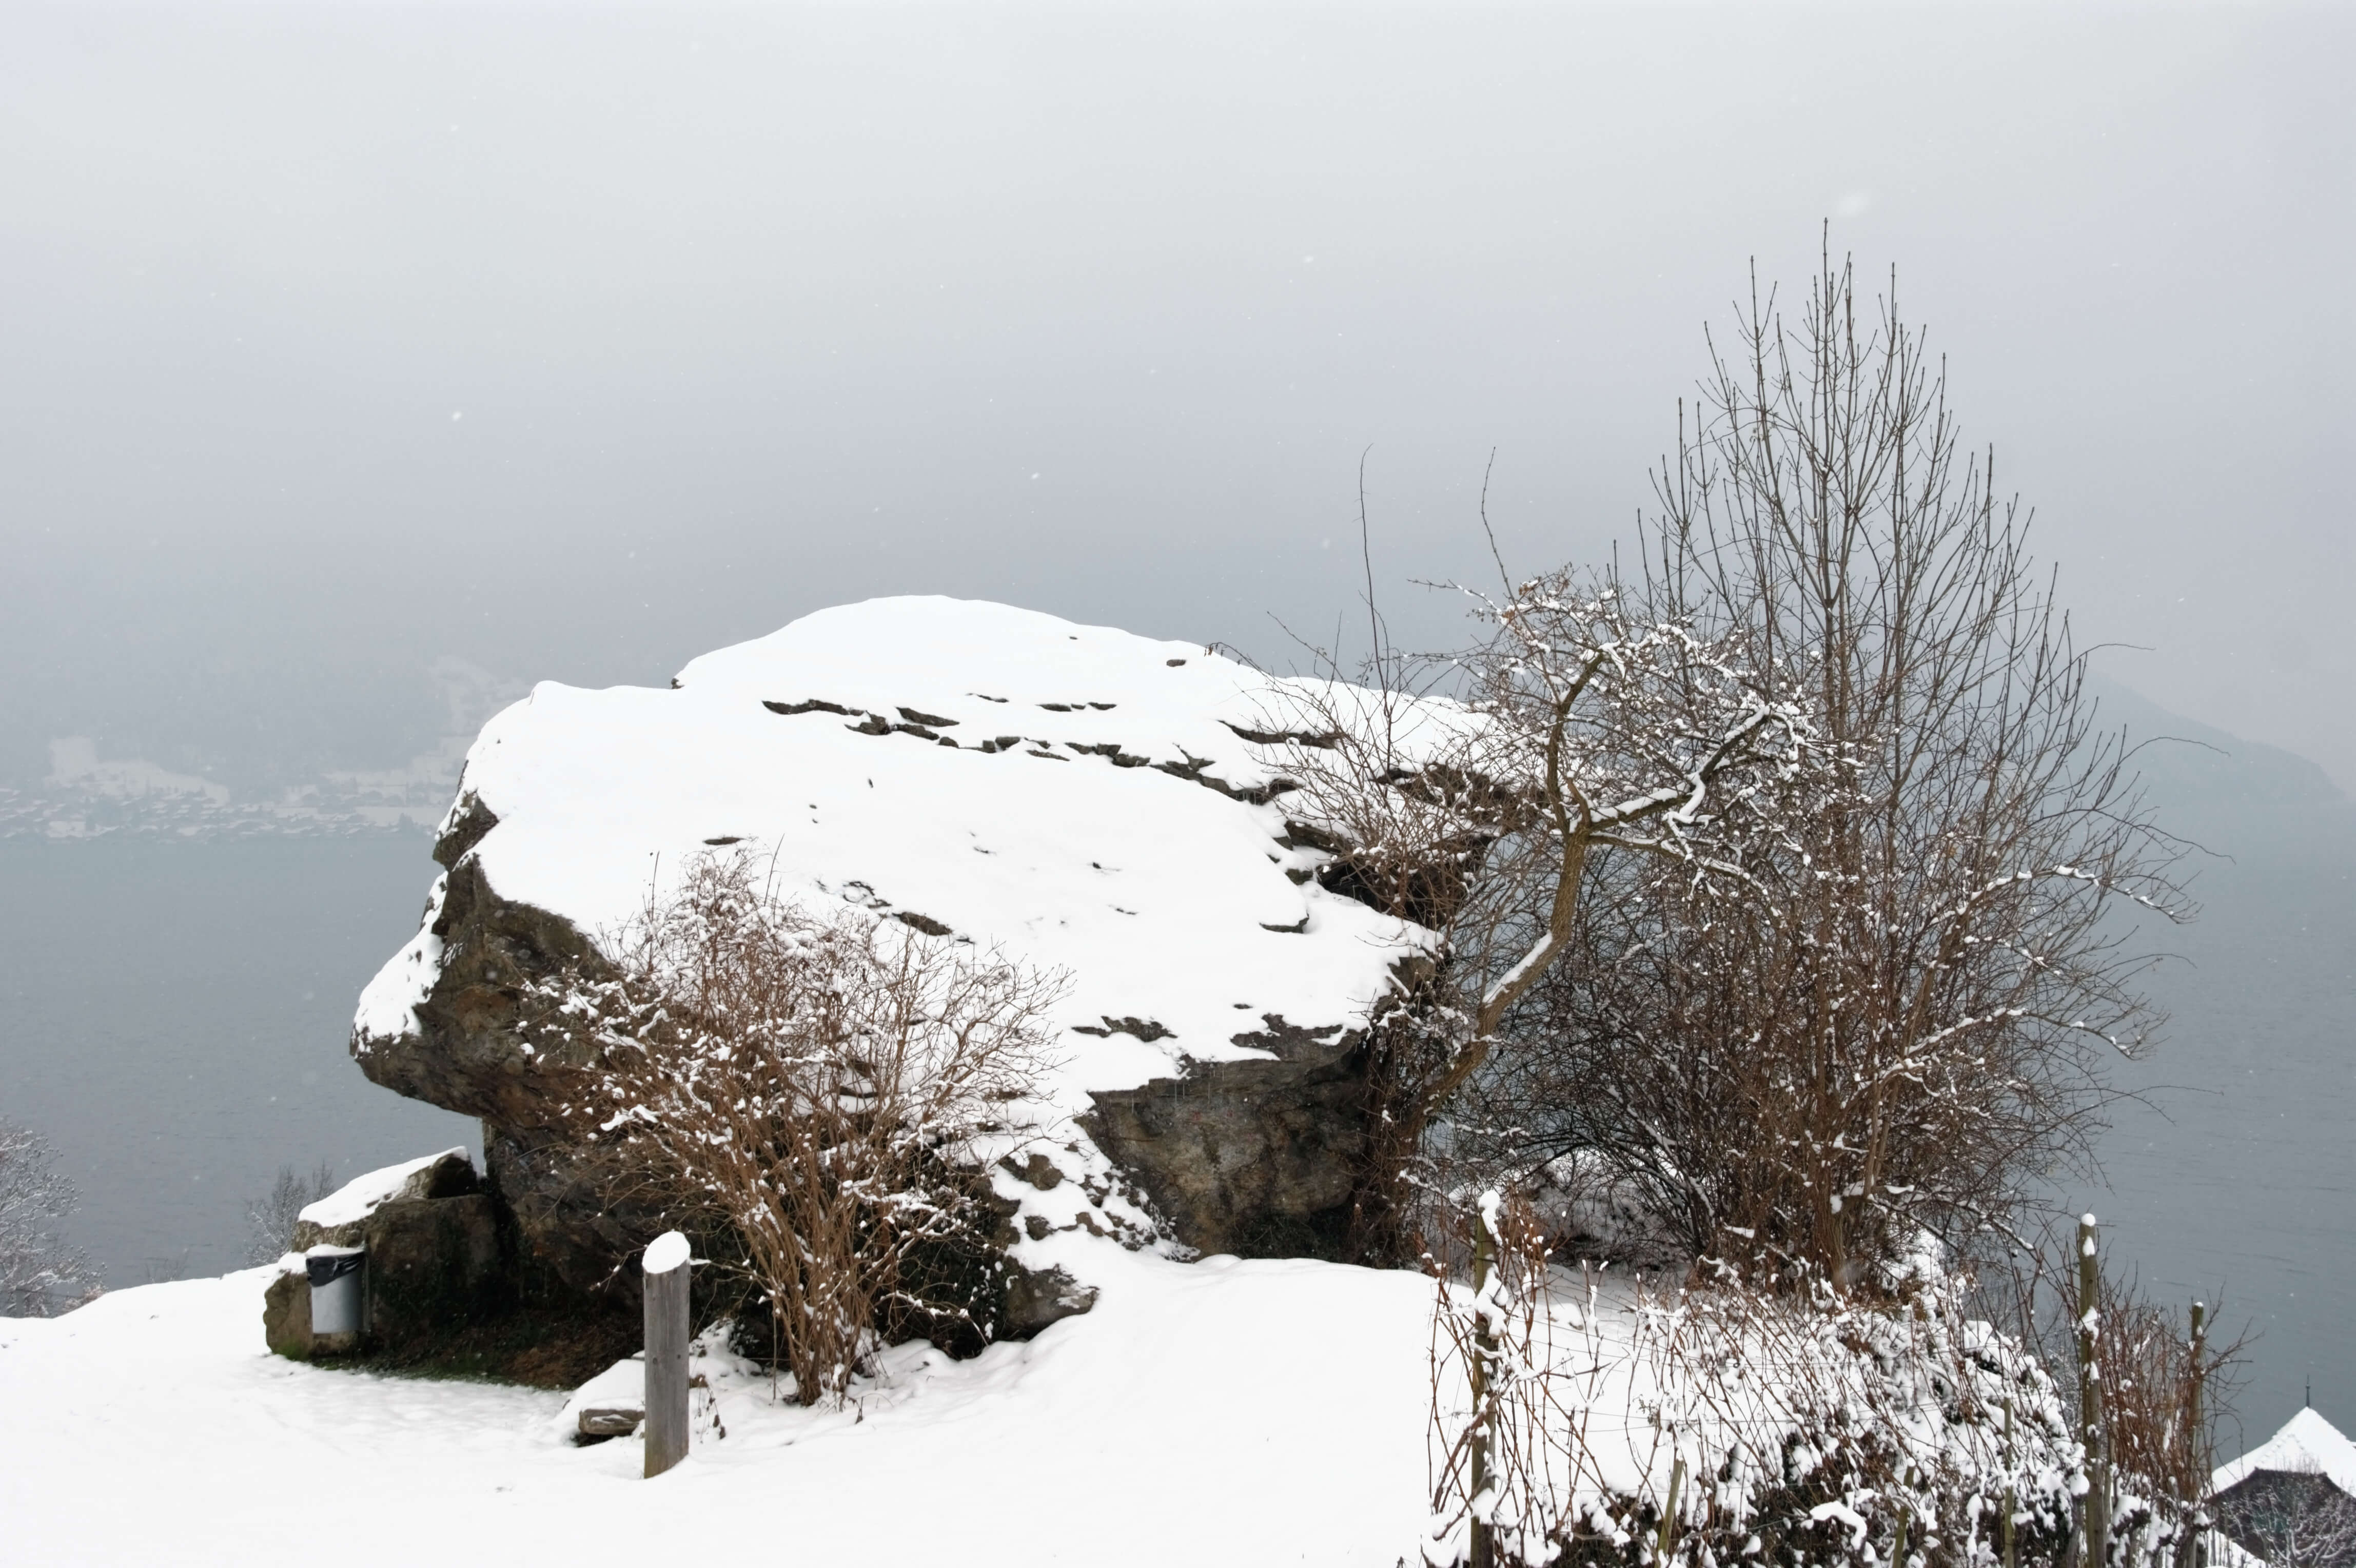 katzenstein-kraftort-rebberg-spiez-winter.jpg